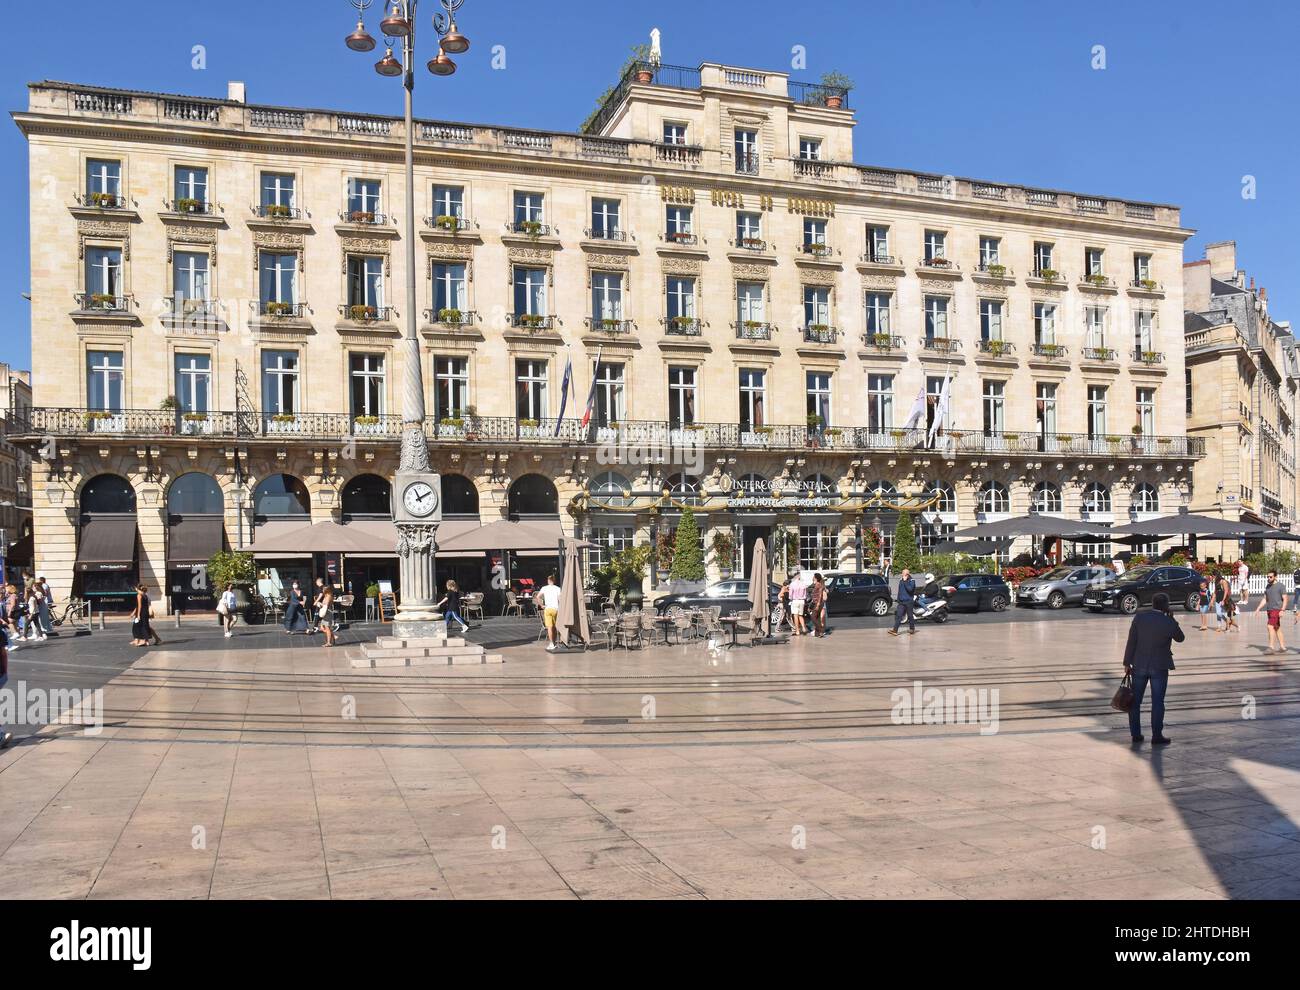 The Intercontinental, Grand Hotel de Bordeaux, facing the Grande Theatre across the Place de la Comédie, built in 1776, by the architect Victor Louis. Stock Photo